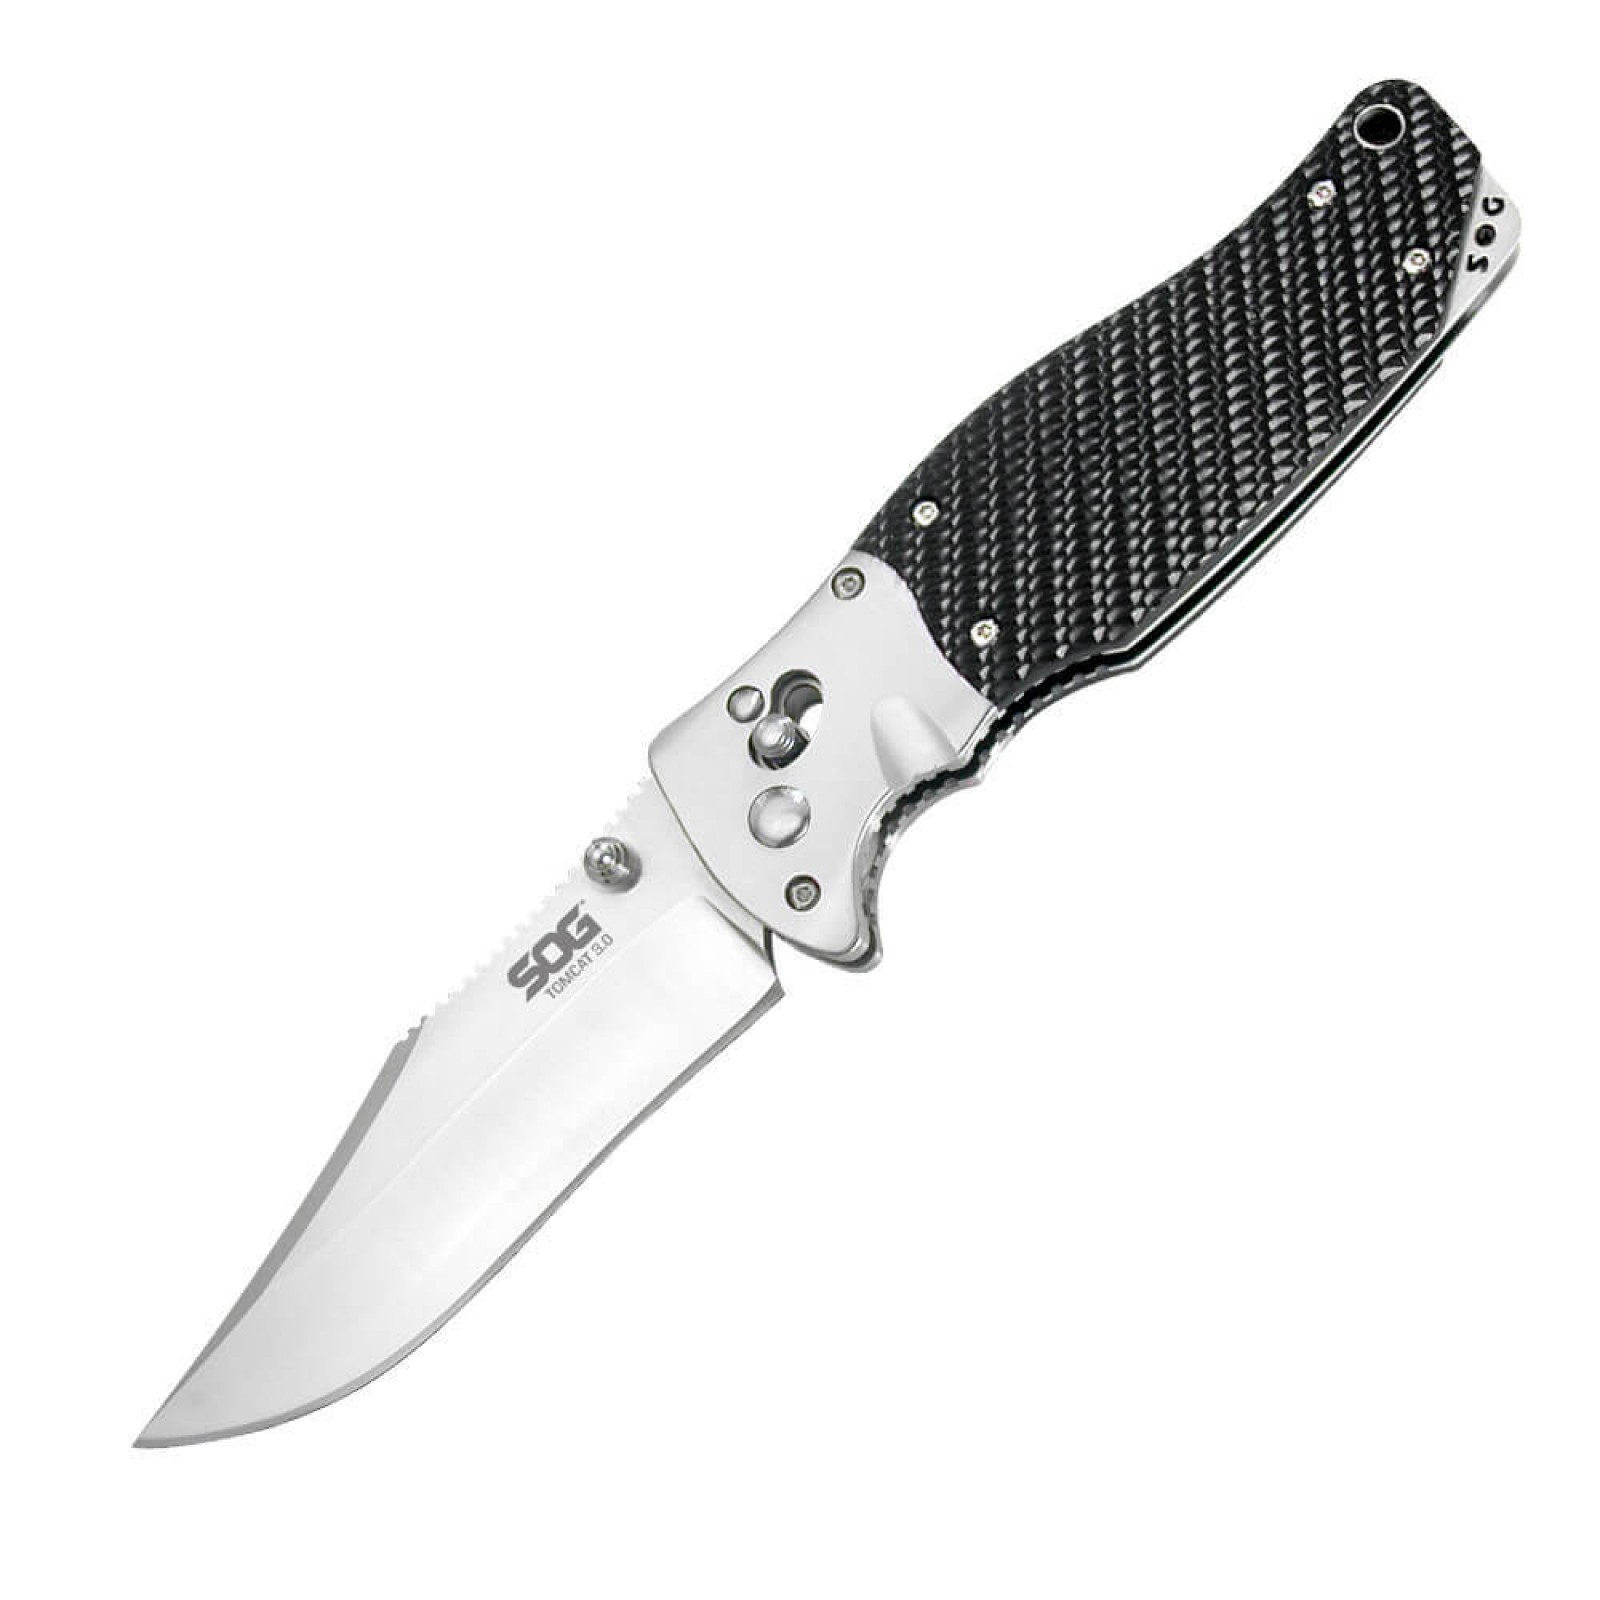 Складной нож Tomcat 3.0 - SOG S95, сталь VG-10, рукоять кратон